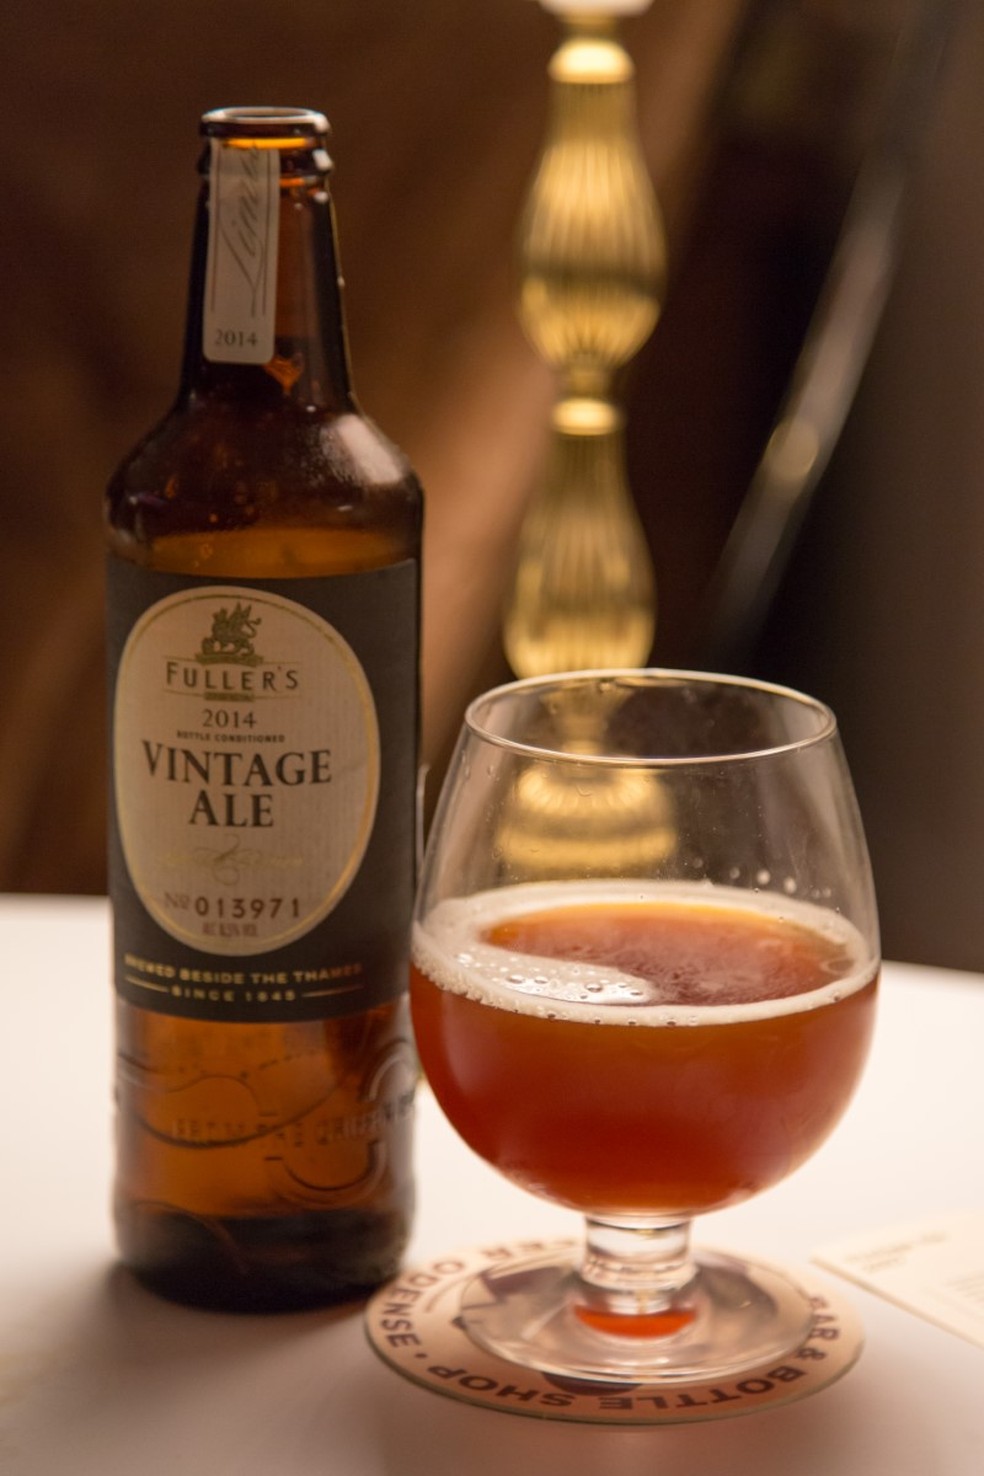 Safra de 2014 da Cerveja Fuller’s Vintage Ale — Foto: Wine and Beer/disorder.dk